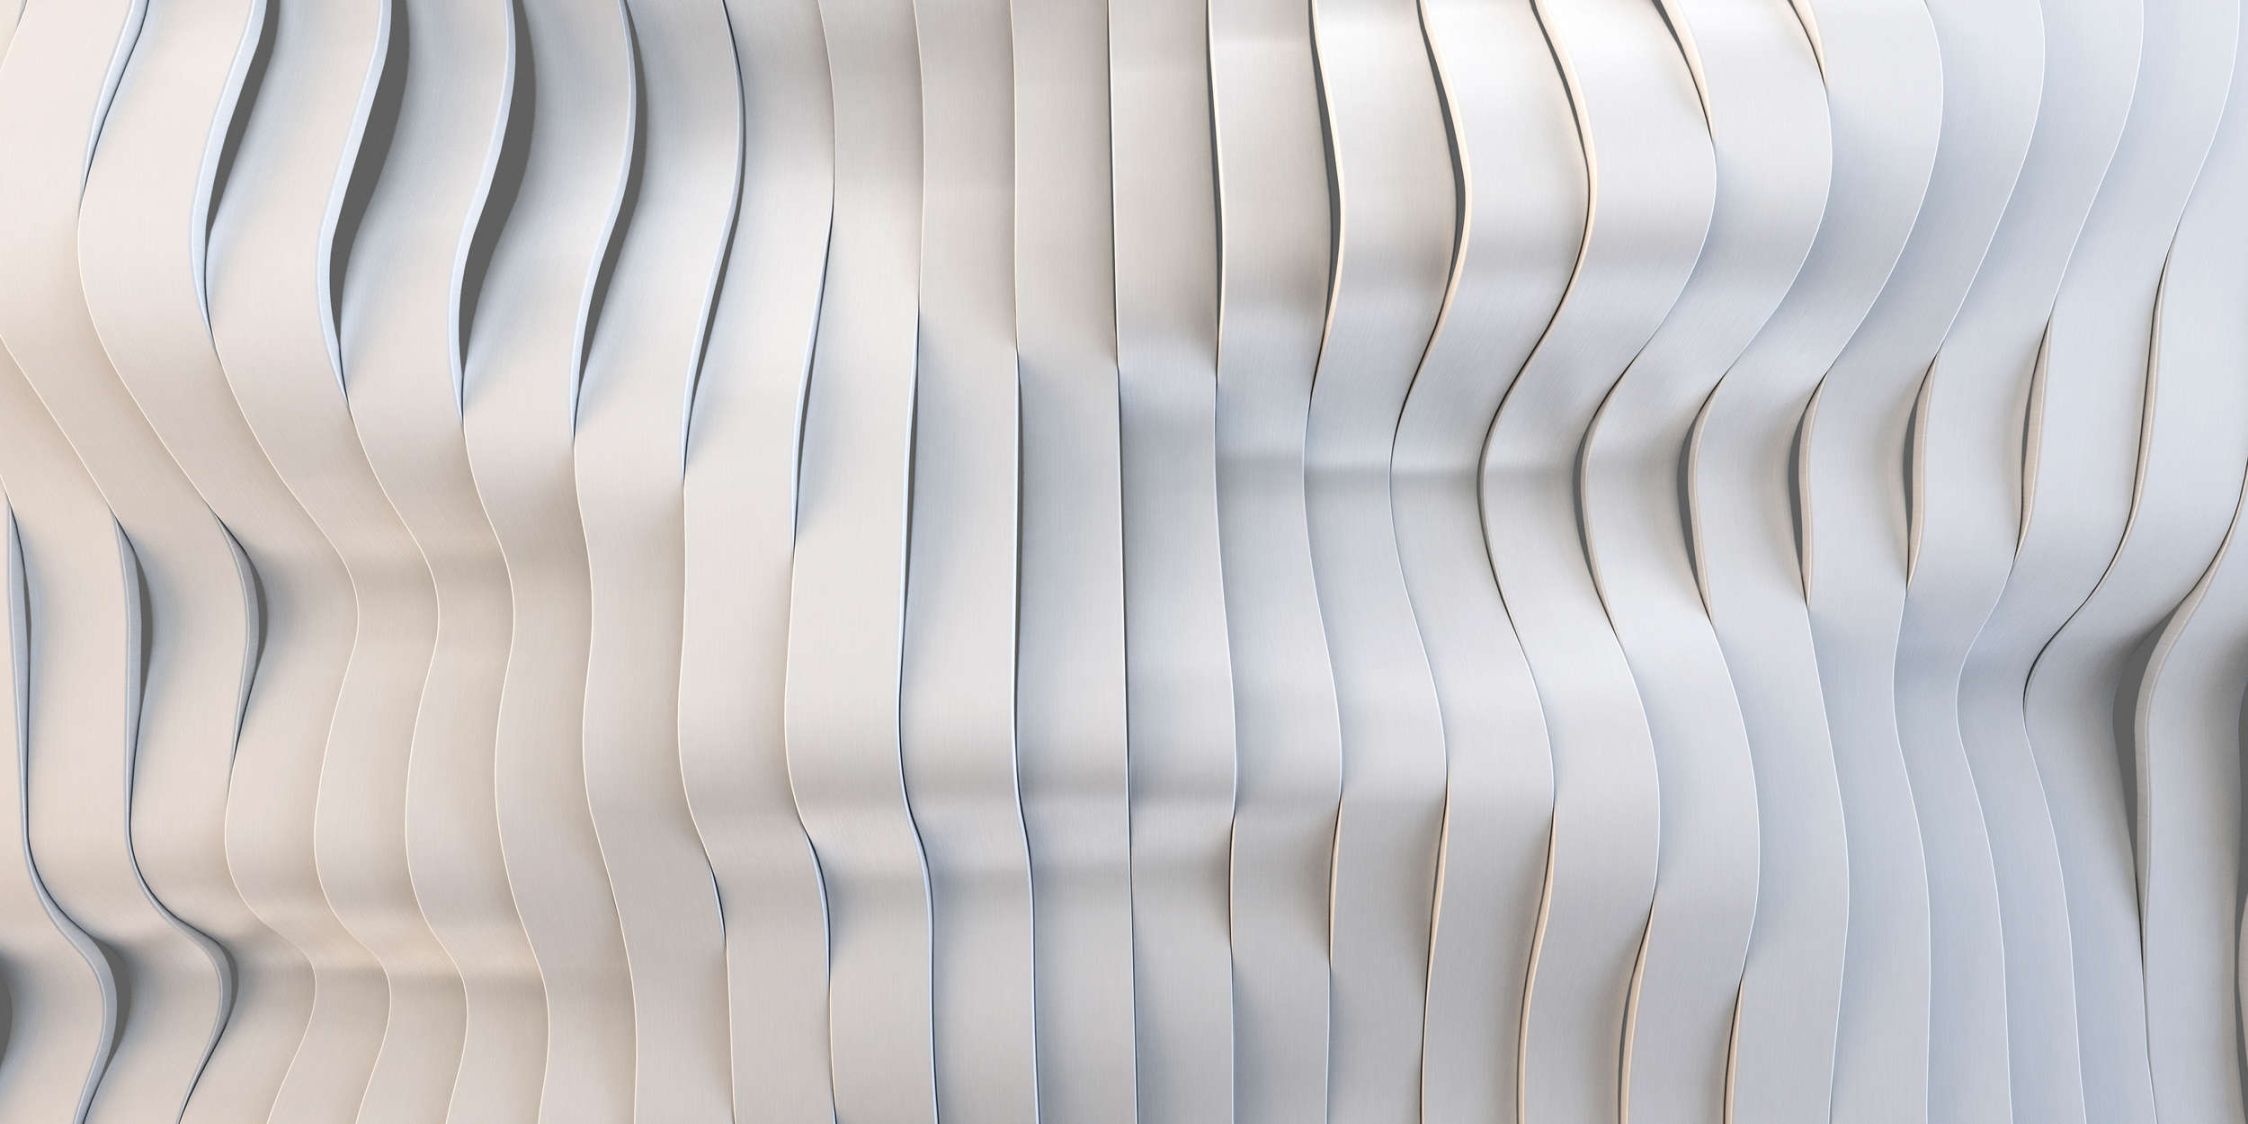             solaris 1 - Photo wallpaper in futuristic streamline design - Lightly textured non-woven fabric
        